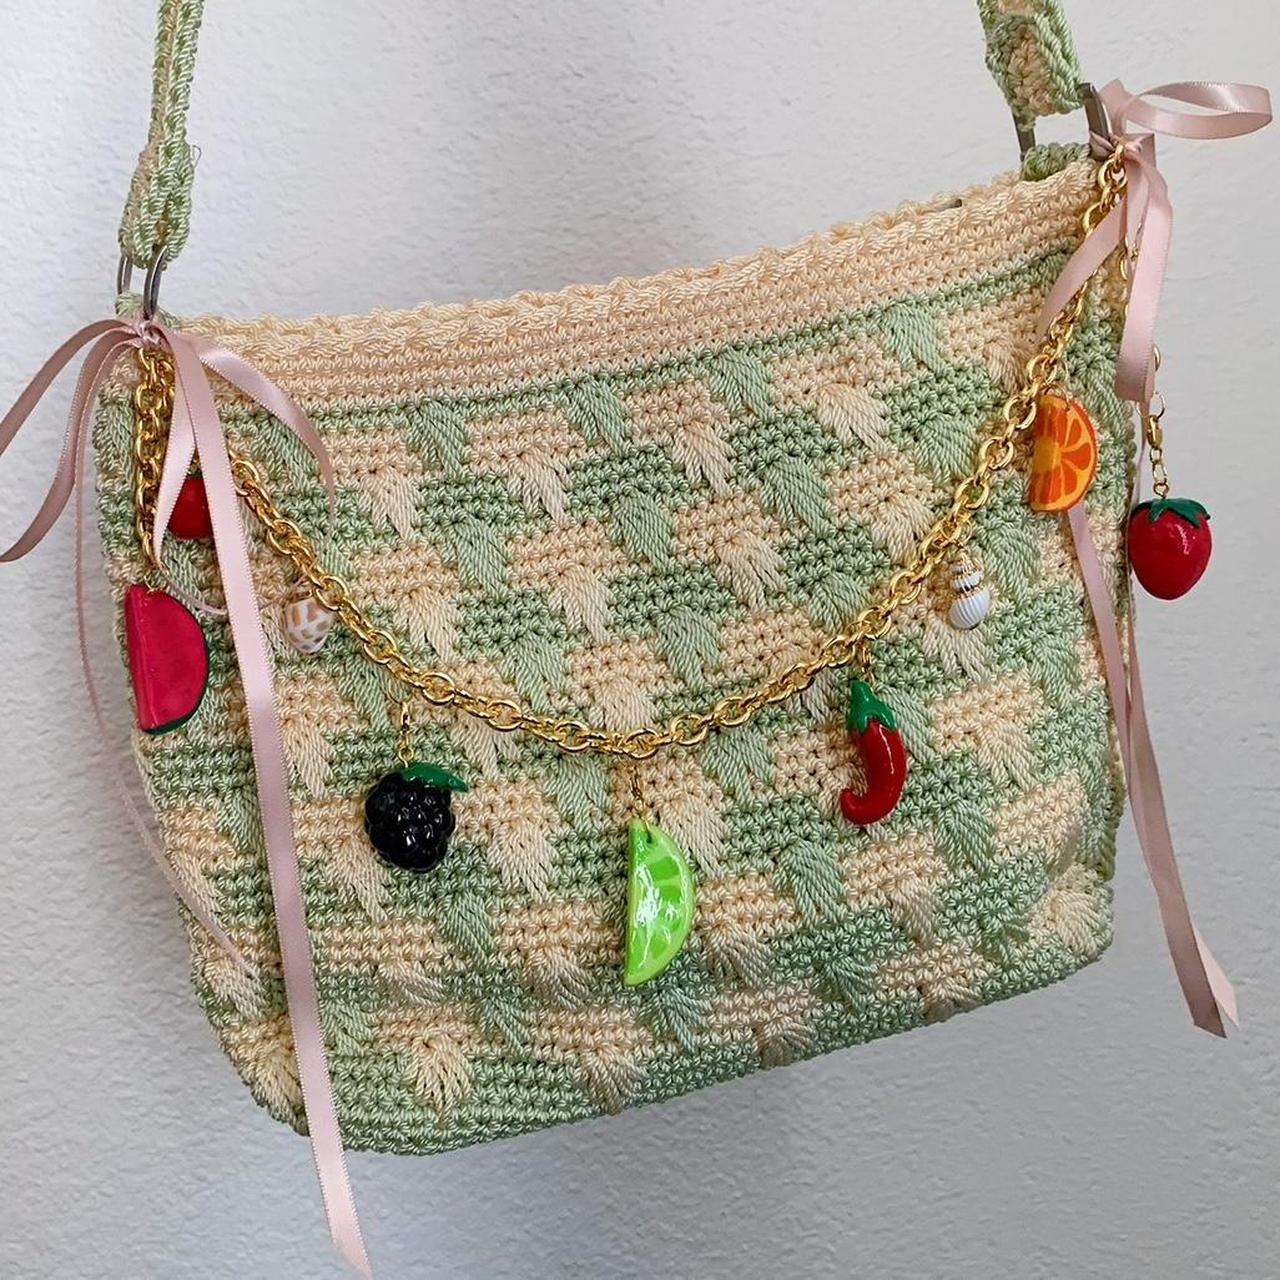 Vintage Woven Crochet Summer Bag with Fruit... - Depop